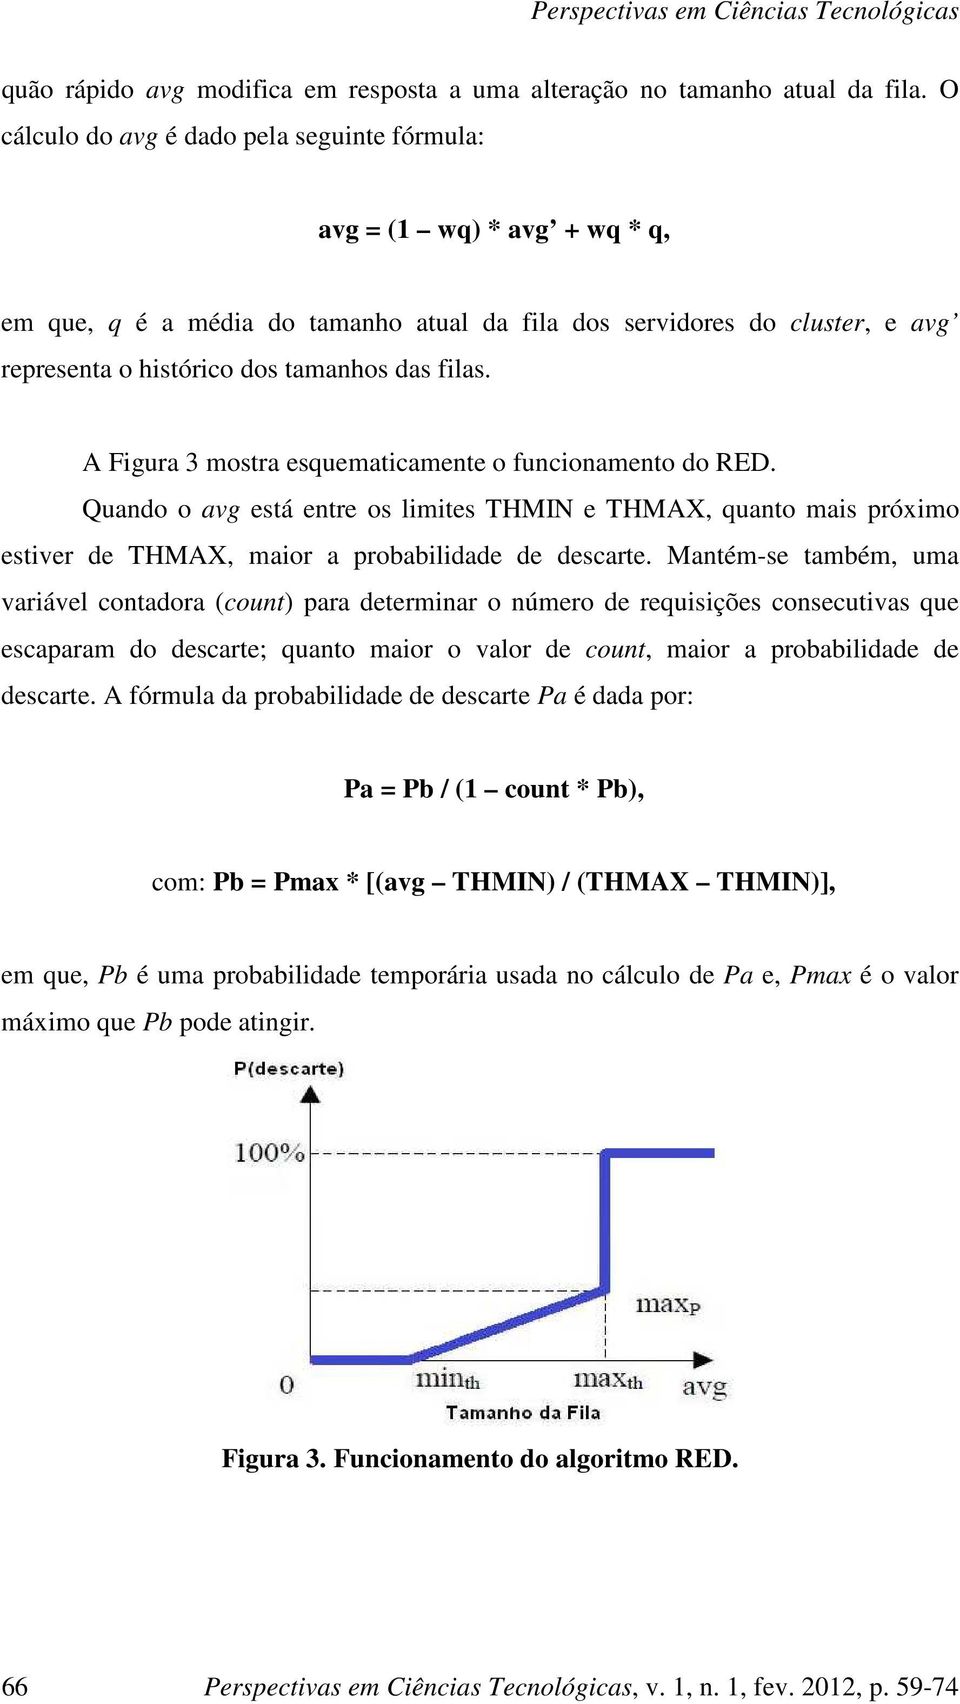 A Figura 3 mostra esquematicamente o funcionamento do RED. Quando o avg está entre os limites THMIN e THMAX, quanto mais próximo estiver de THMAX, maior a probabilidade de descarte.